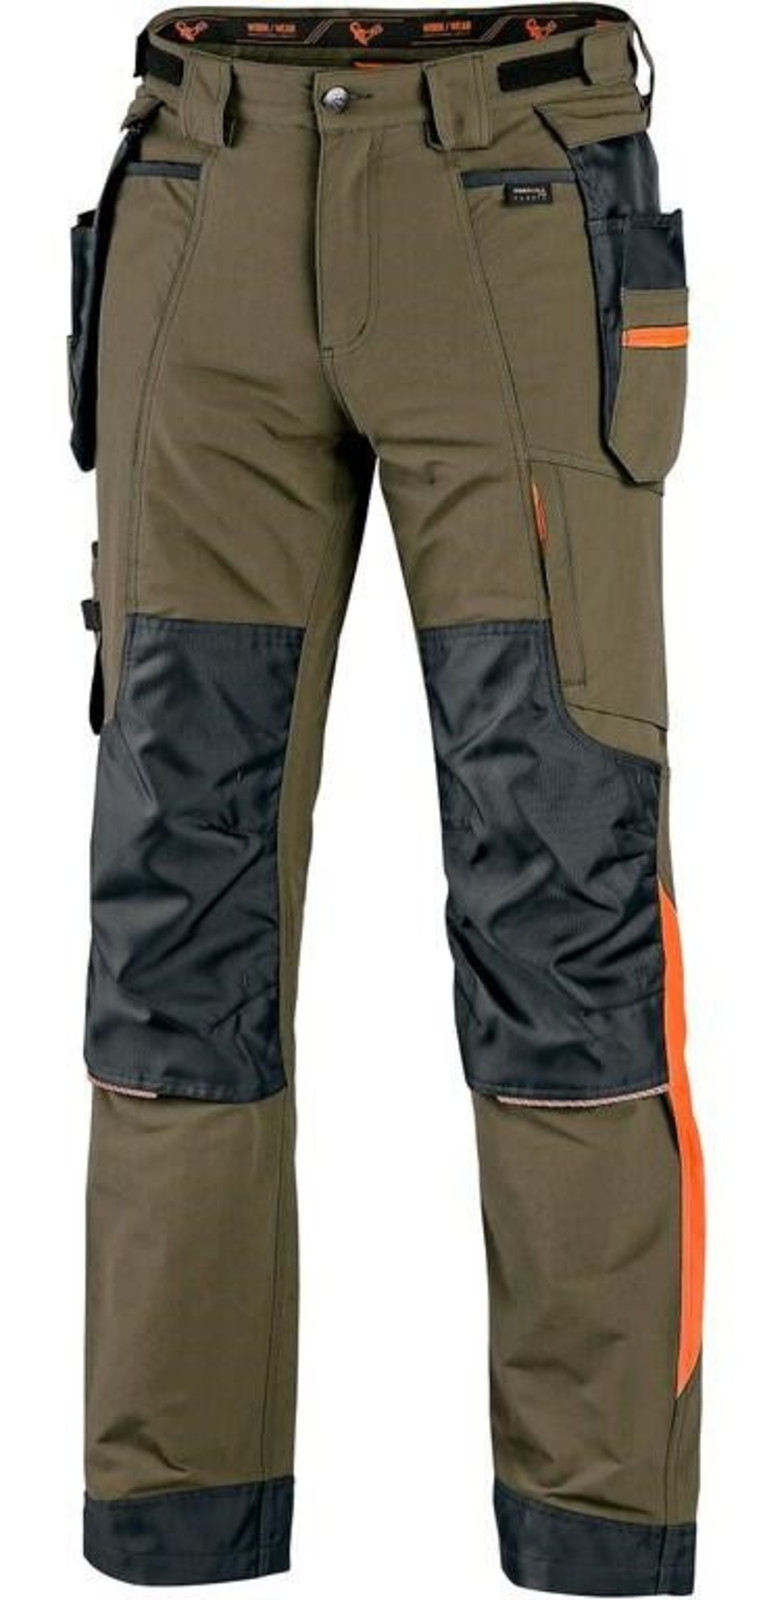 Montérkové nohavice CXS Naos s reflexnými doplnkami - veľkosť: 46, farba: khaki/oranžová